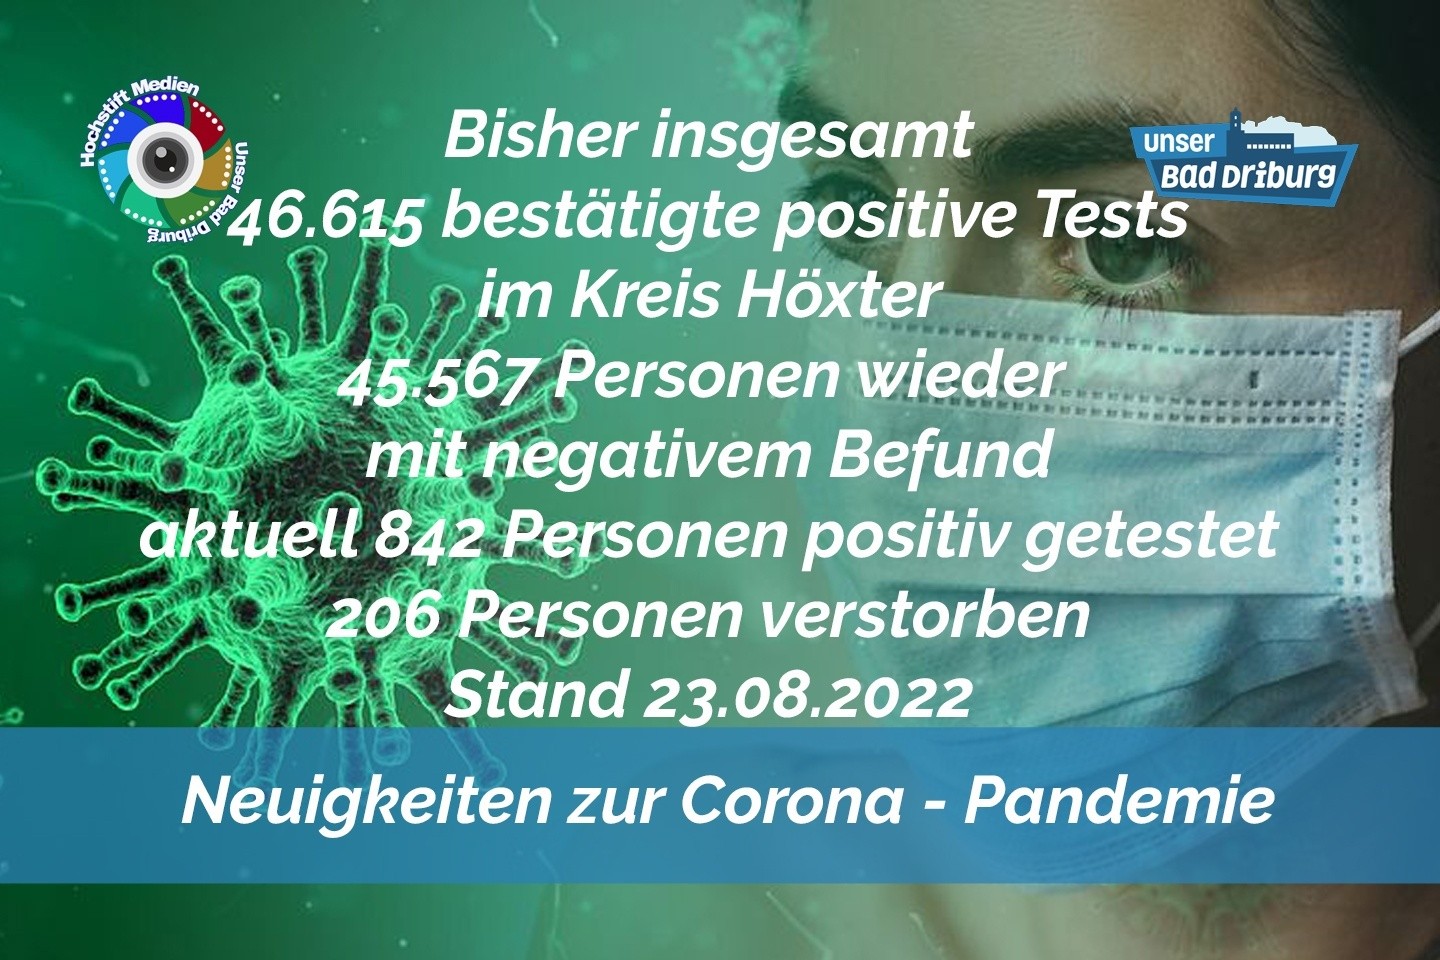 Update 23. August 2022: 126 weitere amtlich positive Tests im Kreis Höxter